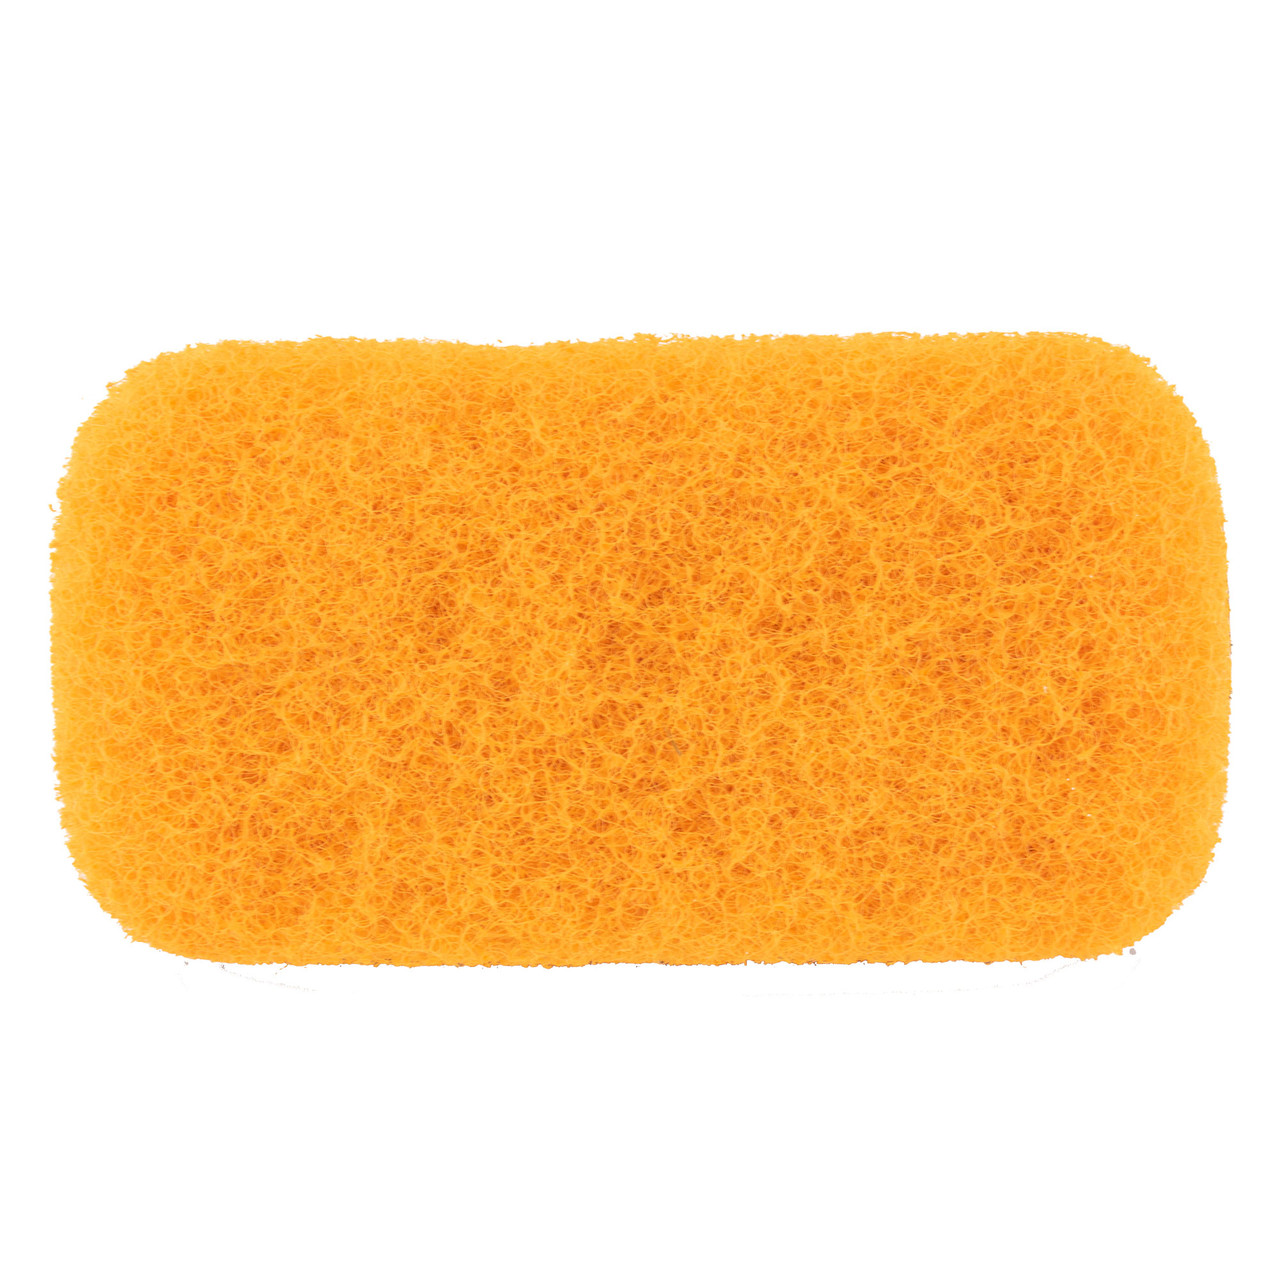 5 Pcs Sponge Scrubber Horse Accessories Large Sponges Cleaning